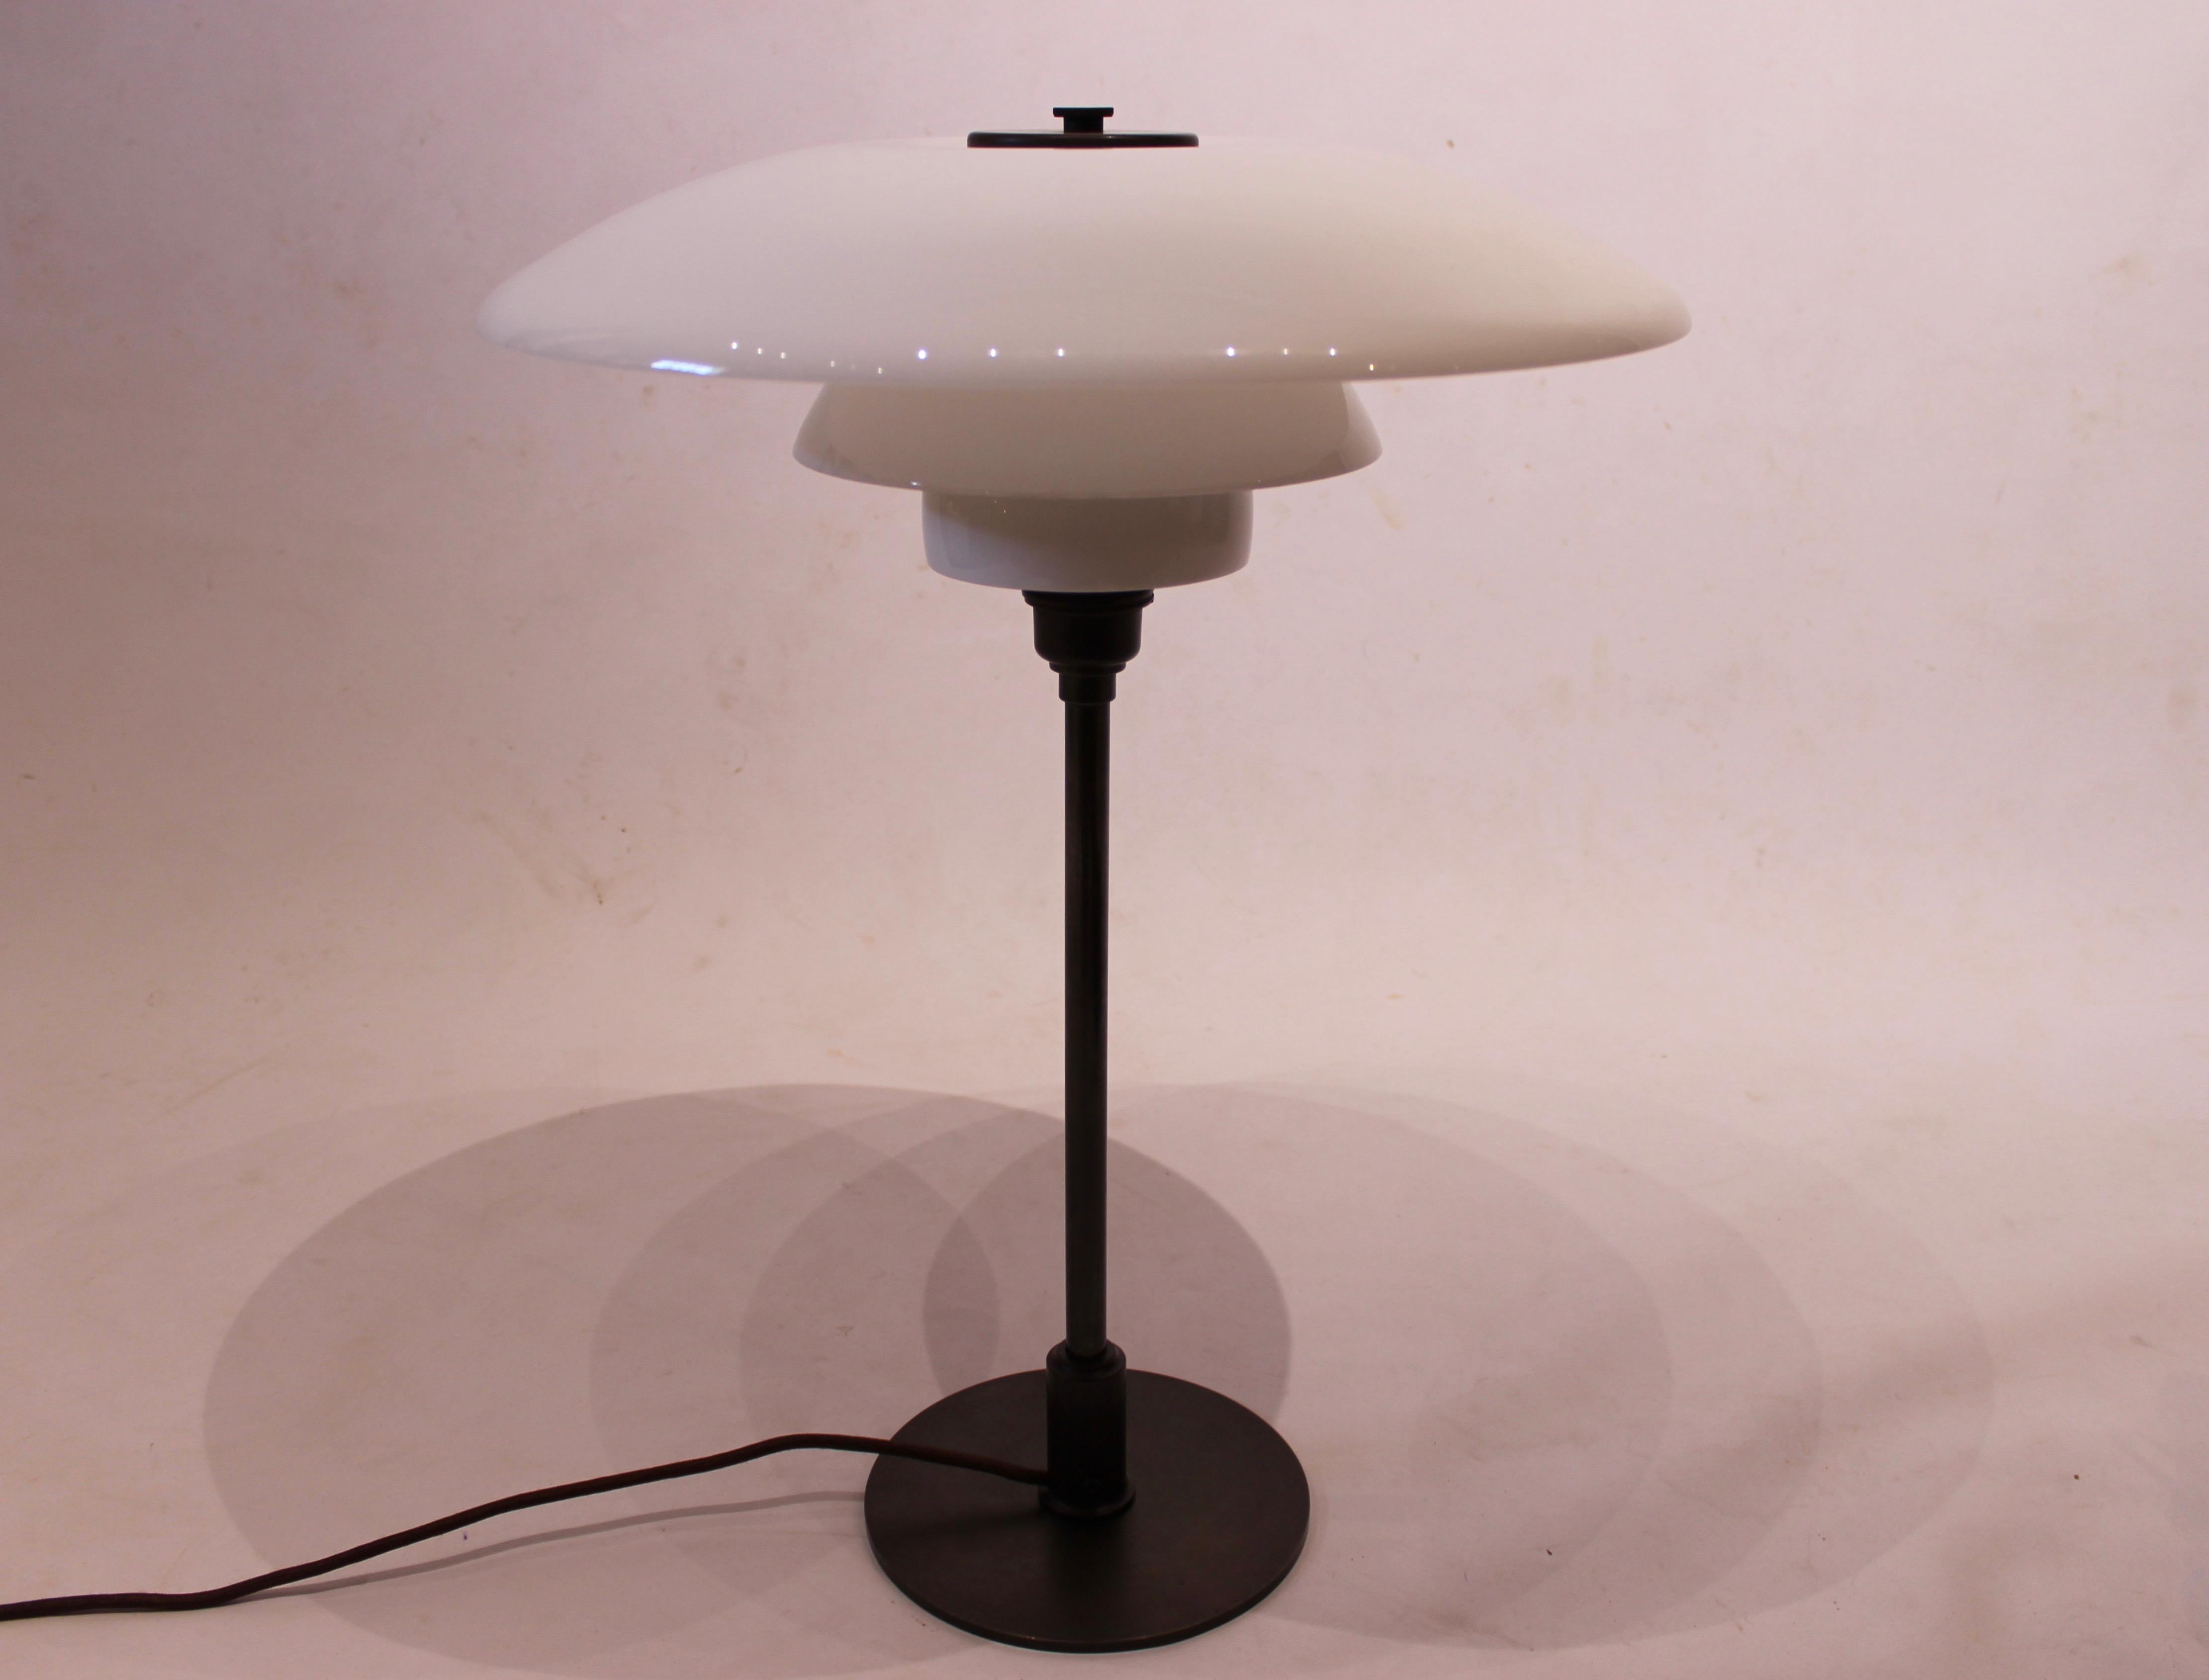 Scandinavian Modern Poul Heningsen Table Lamp, model PH 4/3 of White Opaline Glass, 1950's For Sale